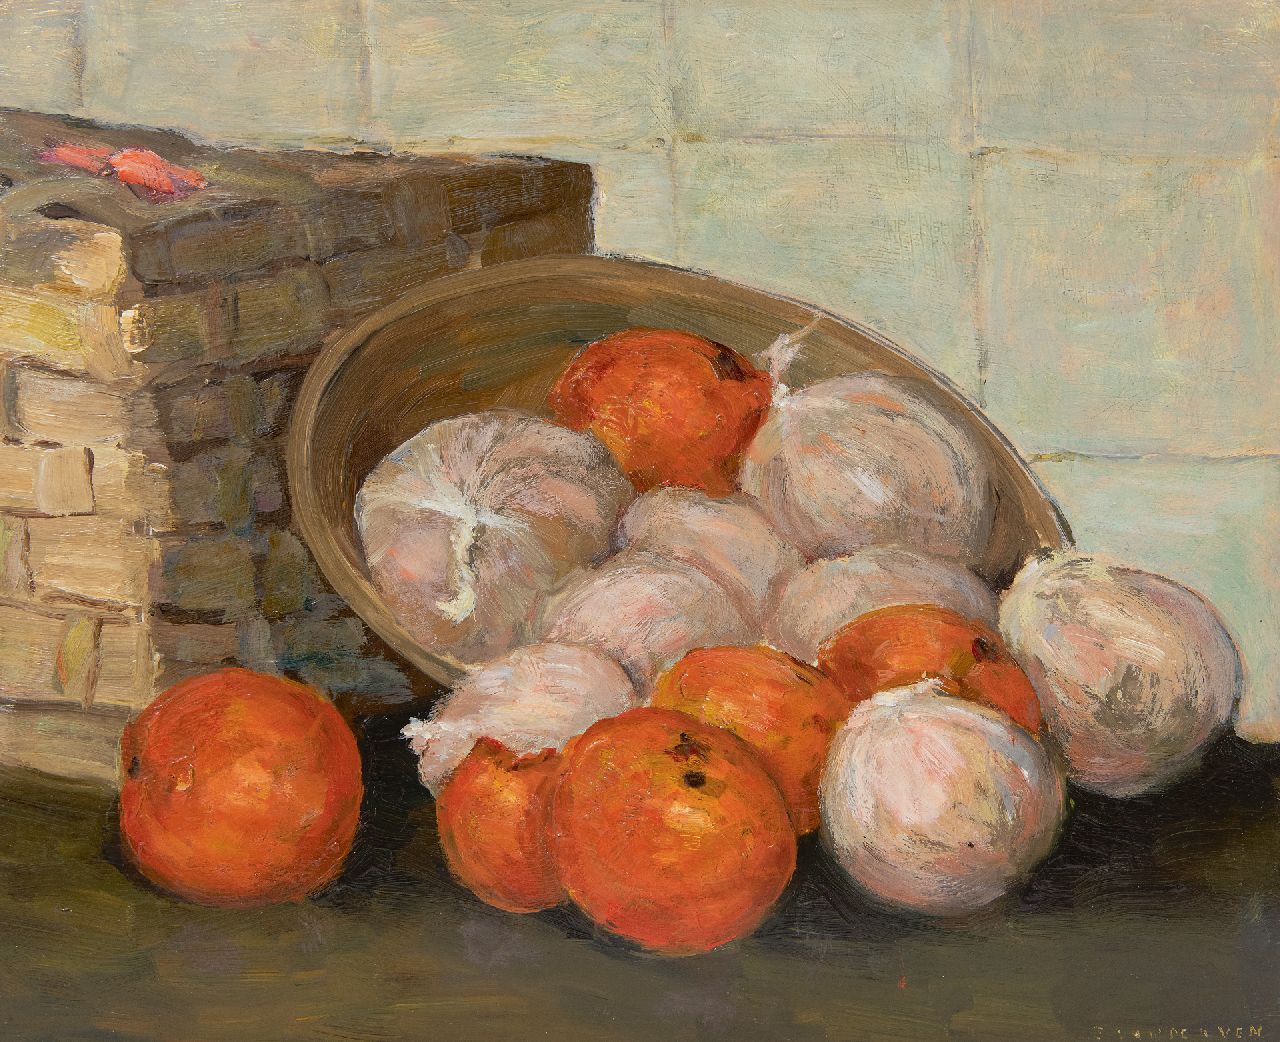 Manus van der Ven | Stilleven met mandarijnen, olieverf op board, 30,4 x 37,2 cm, gesigneerd r.o.